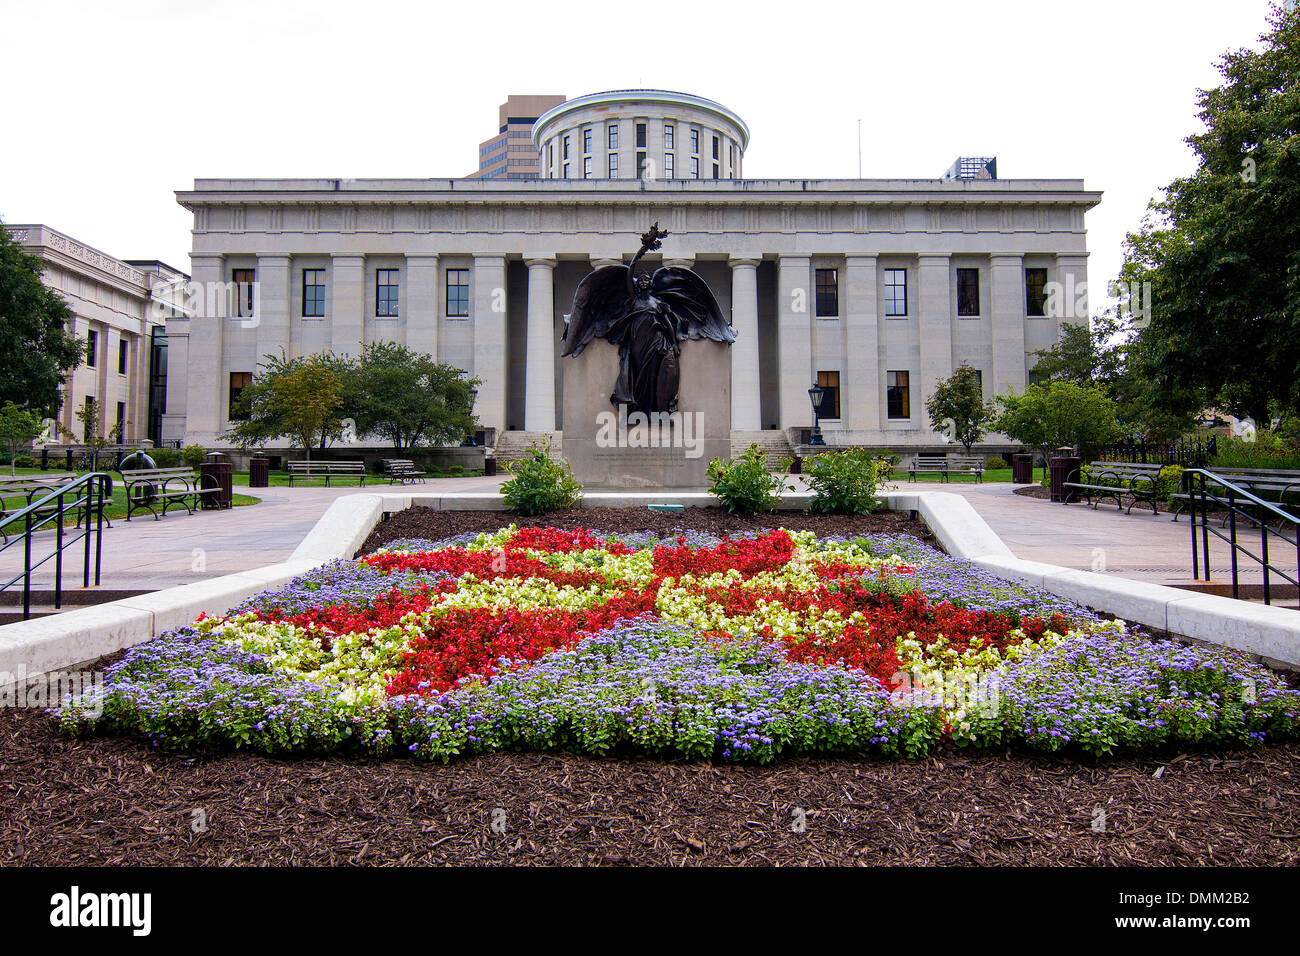 The Ohio Statehouse in Columbus, Ohio, USA. Stock Photo